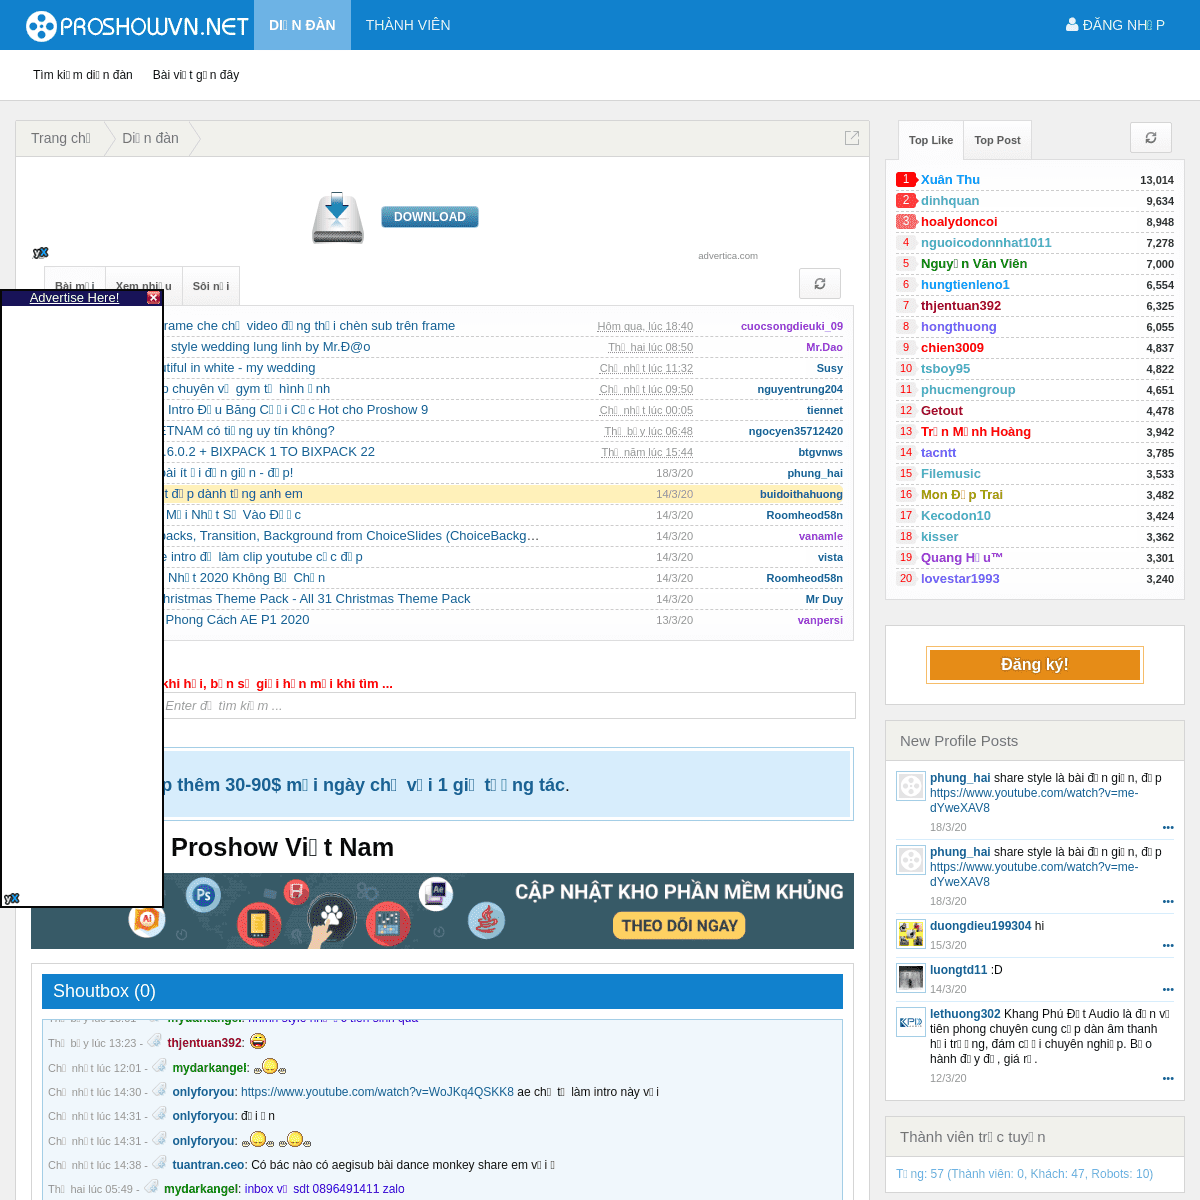 A complete backup of proshowvn.net